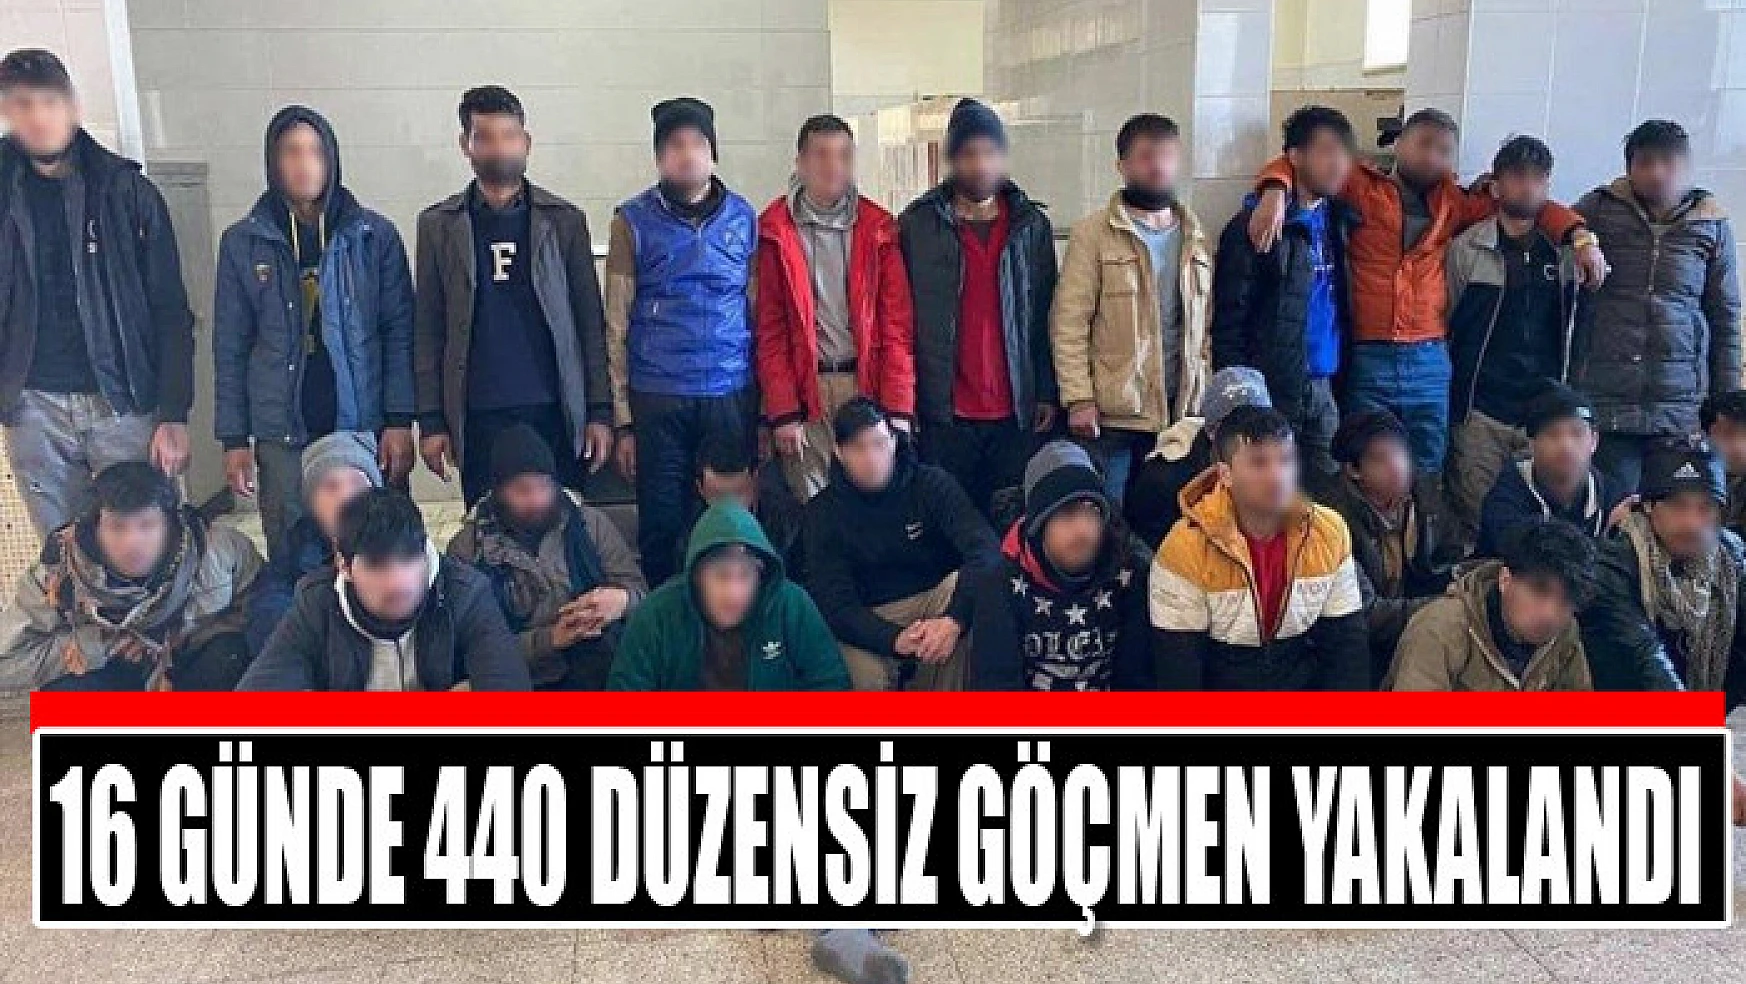 16 günde 440 düzensiz göçmen yakalandı